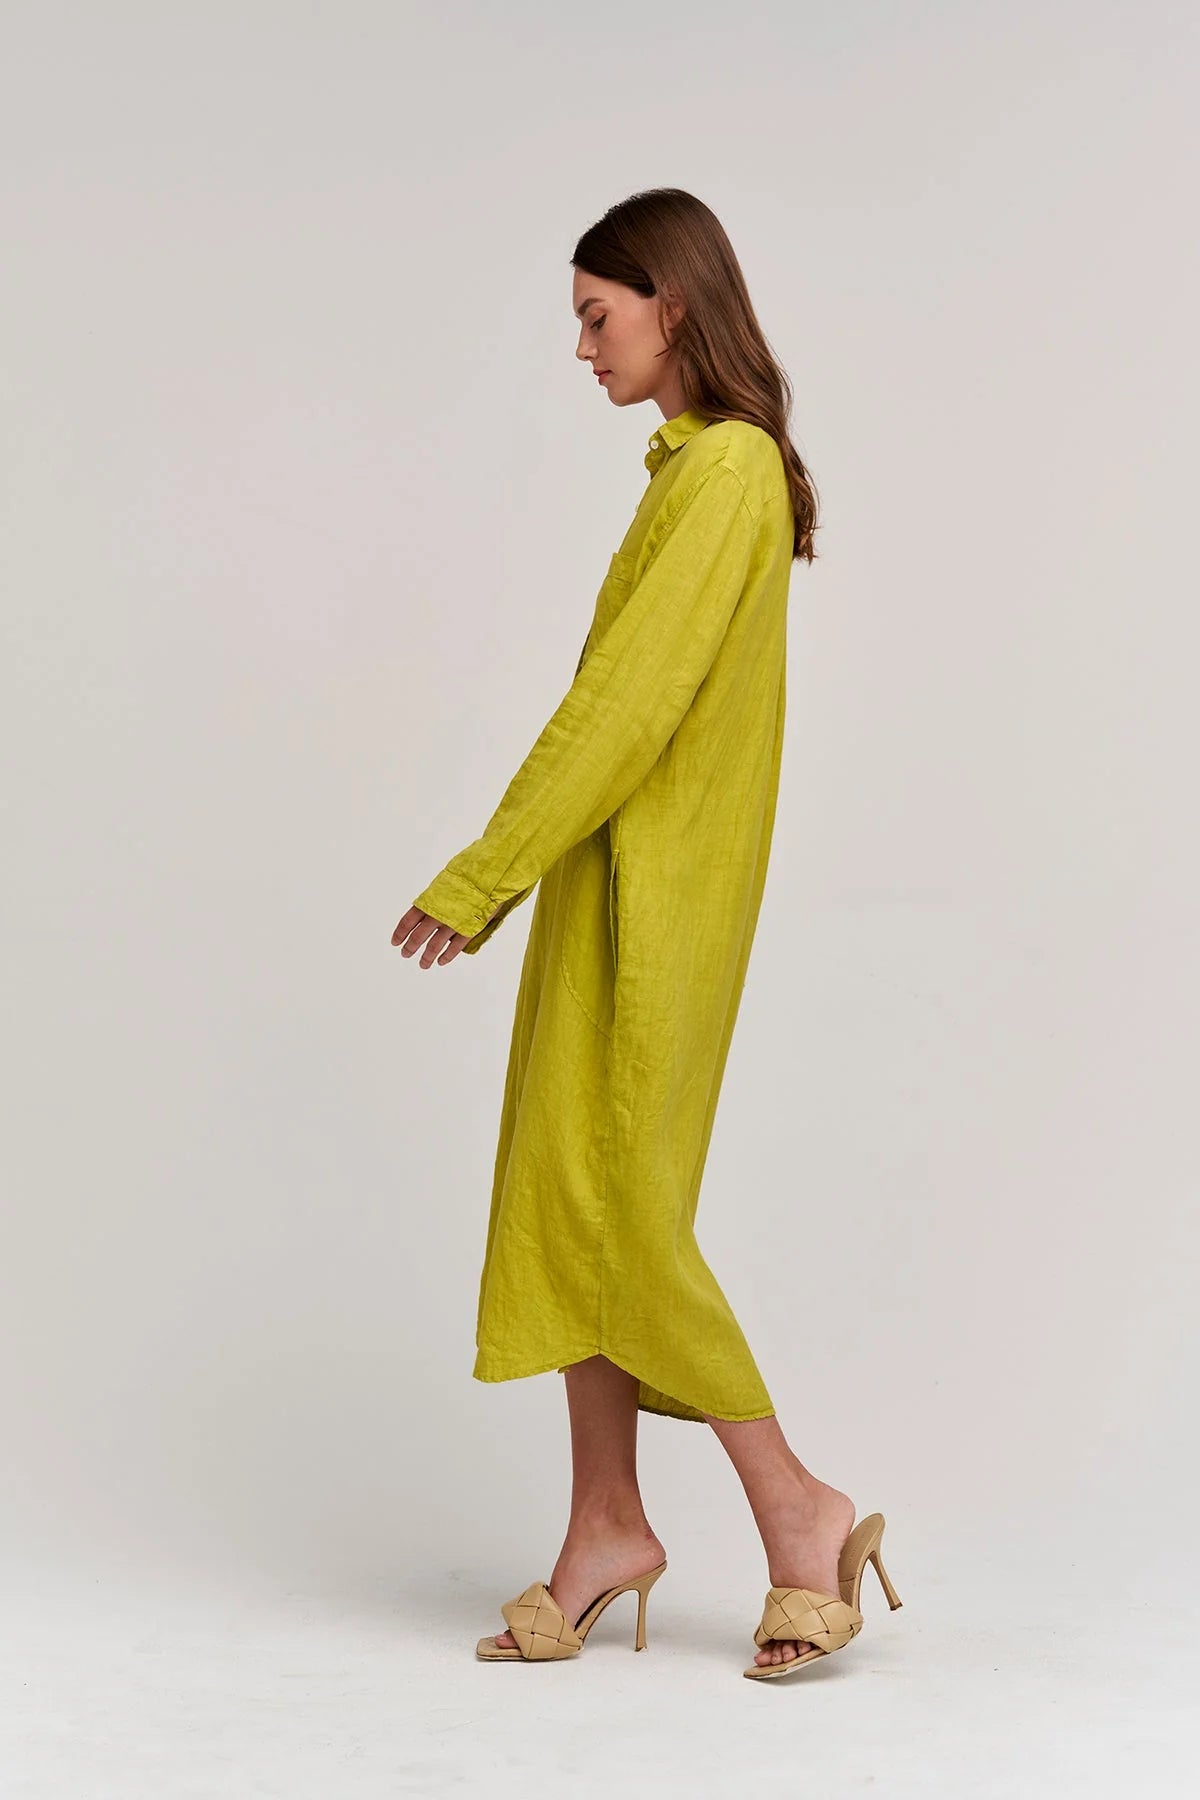 Jora Woven Linen Button-up Dress in Lemondrop